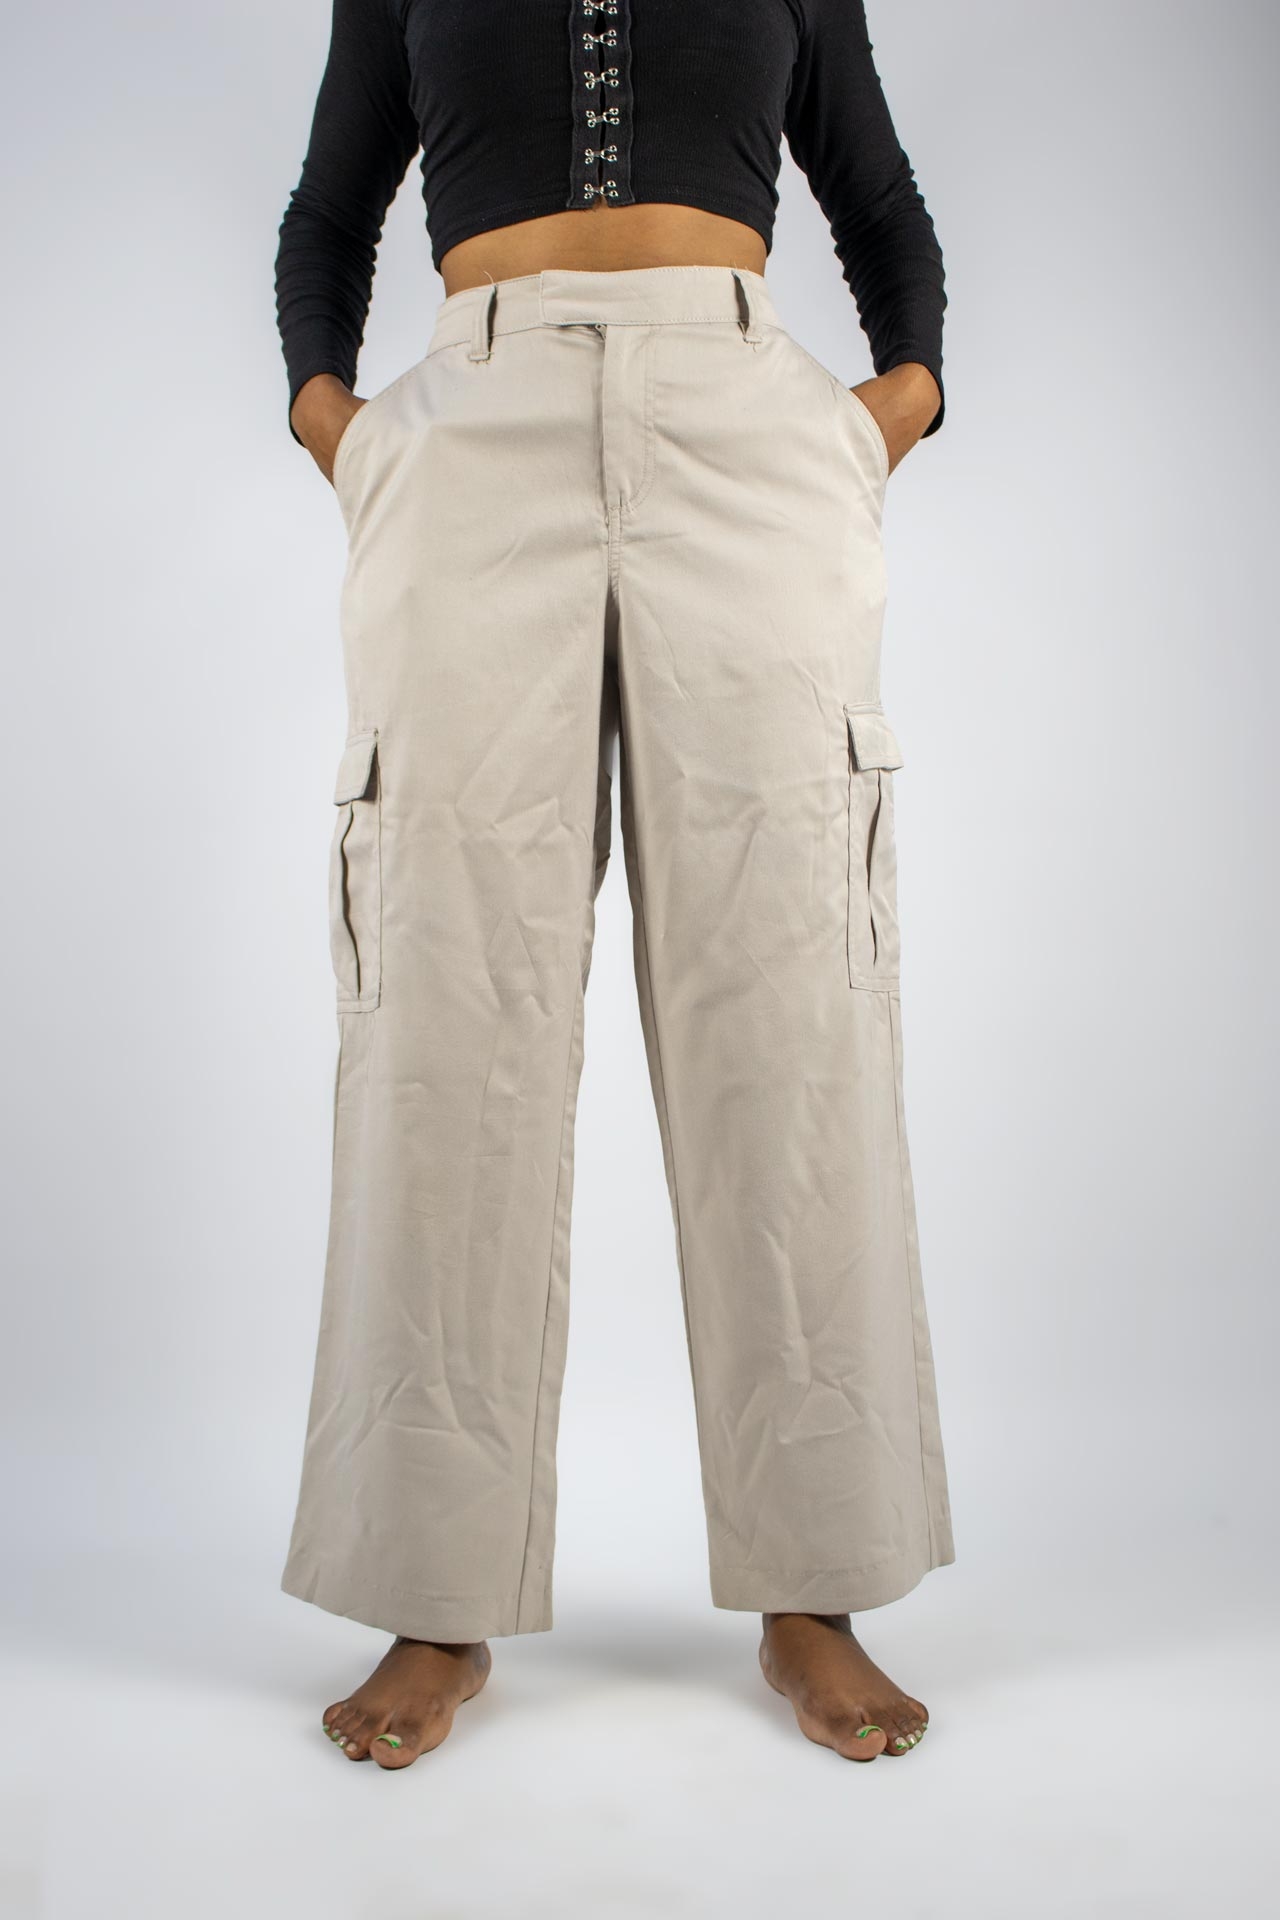 N&M Divided Khaki Pants